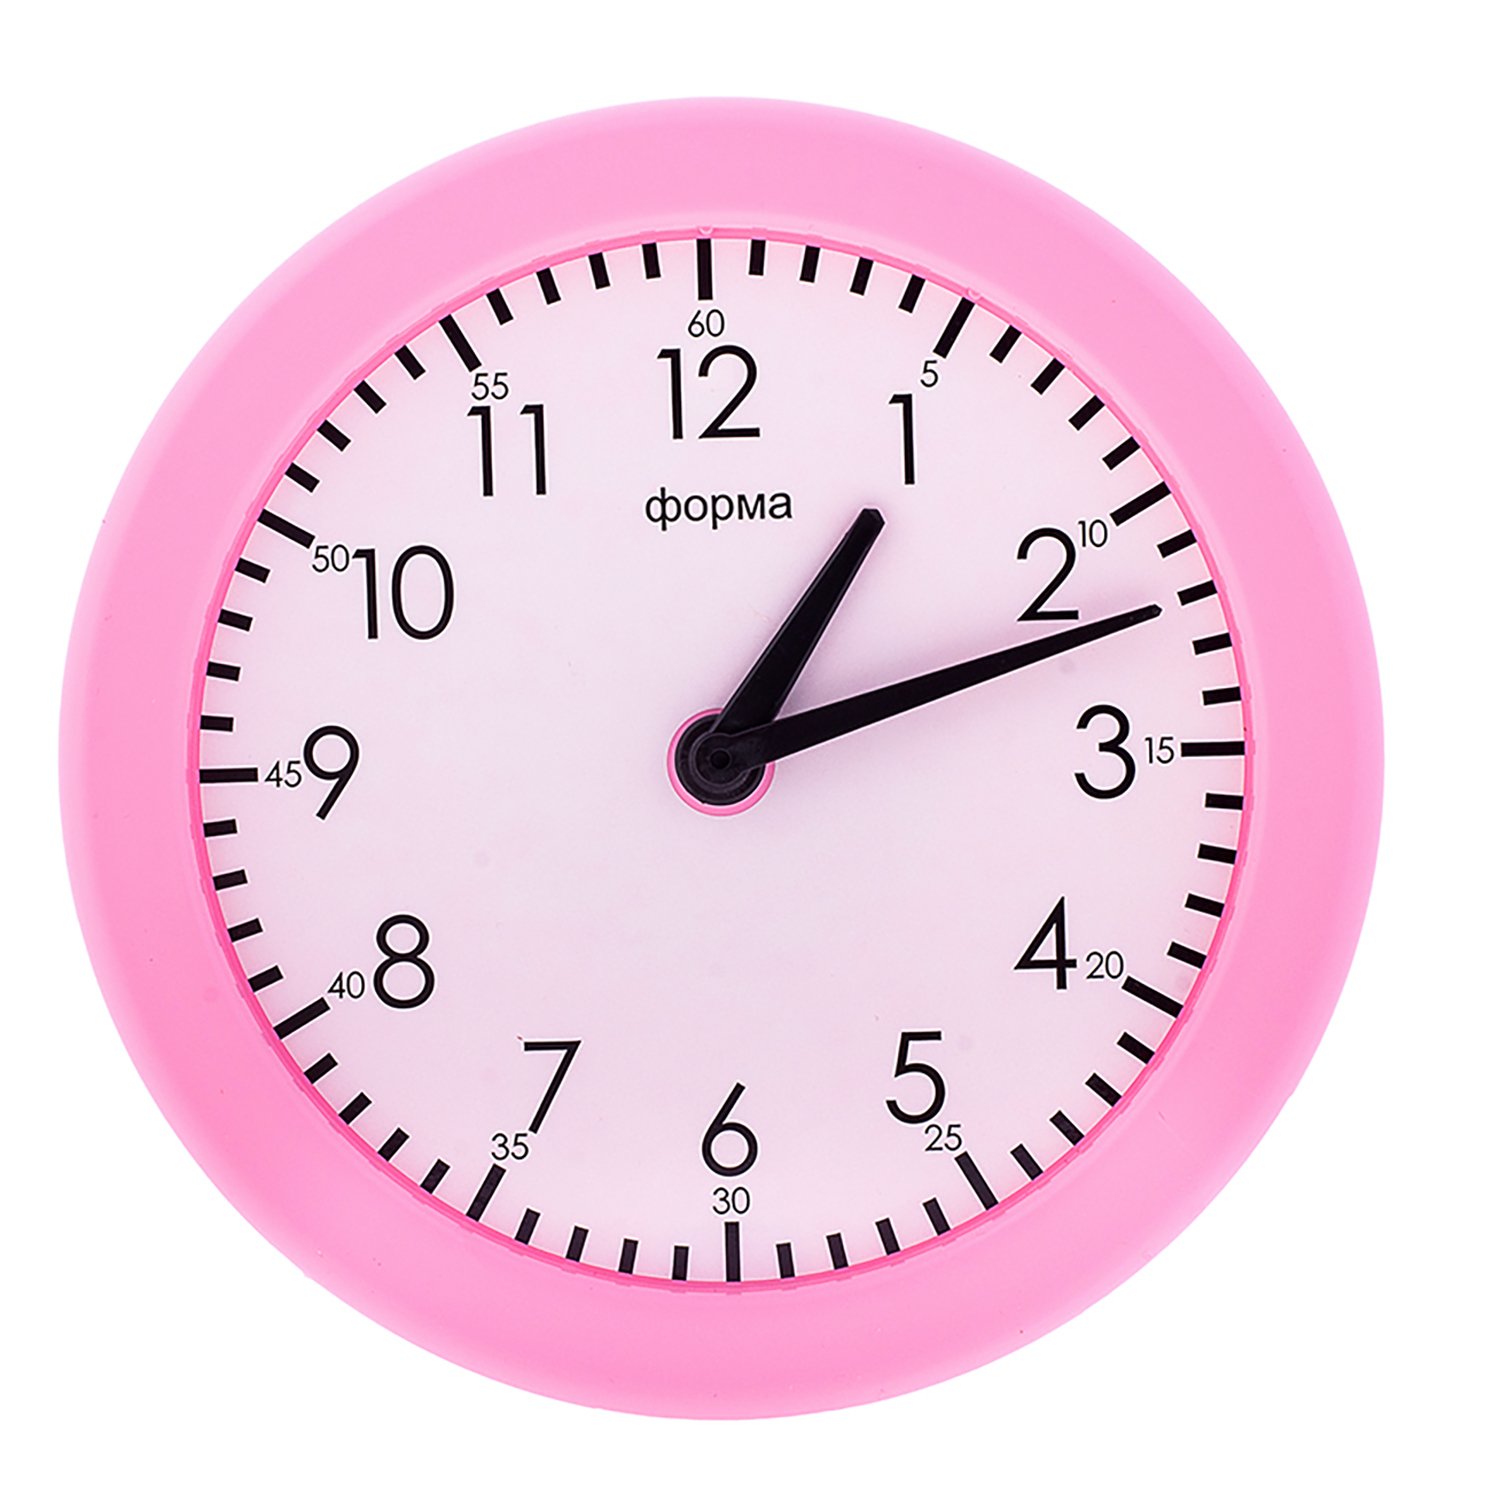 Простые формы часов. Часы форма. Форма с часами. Часики в форме цветочка. Watch формы.